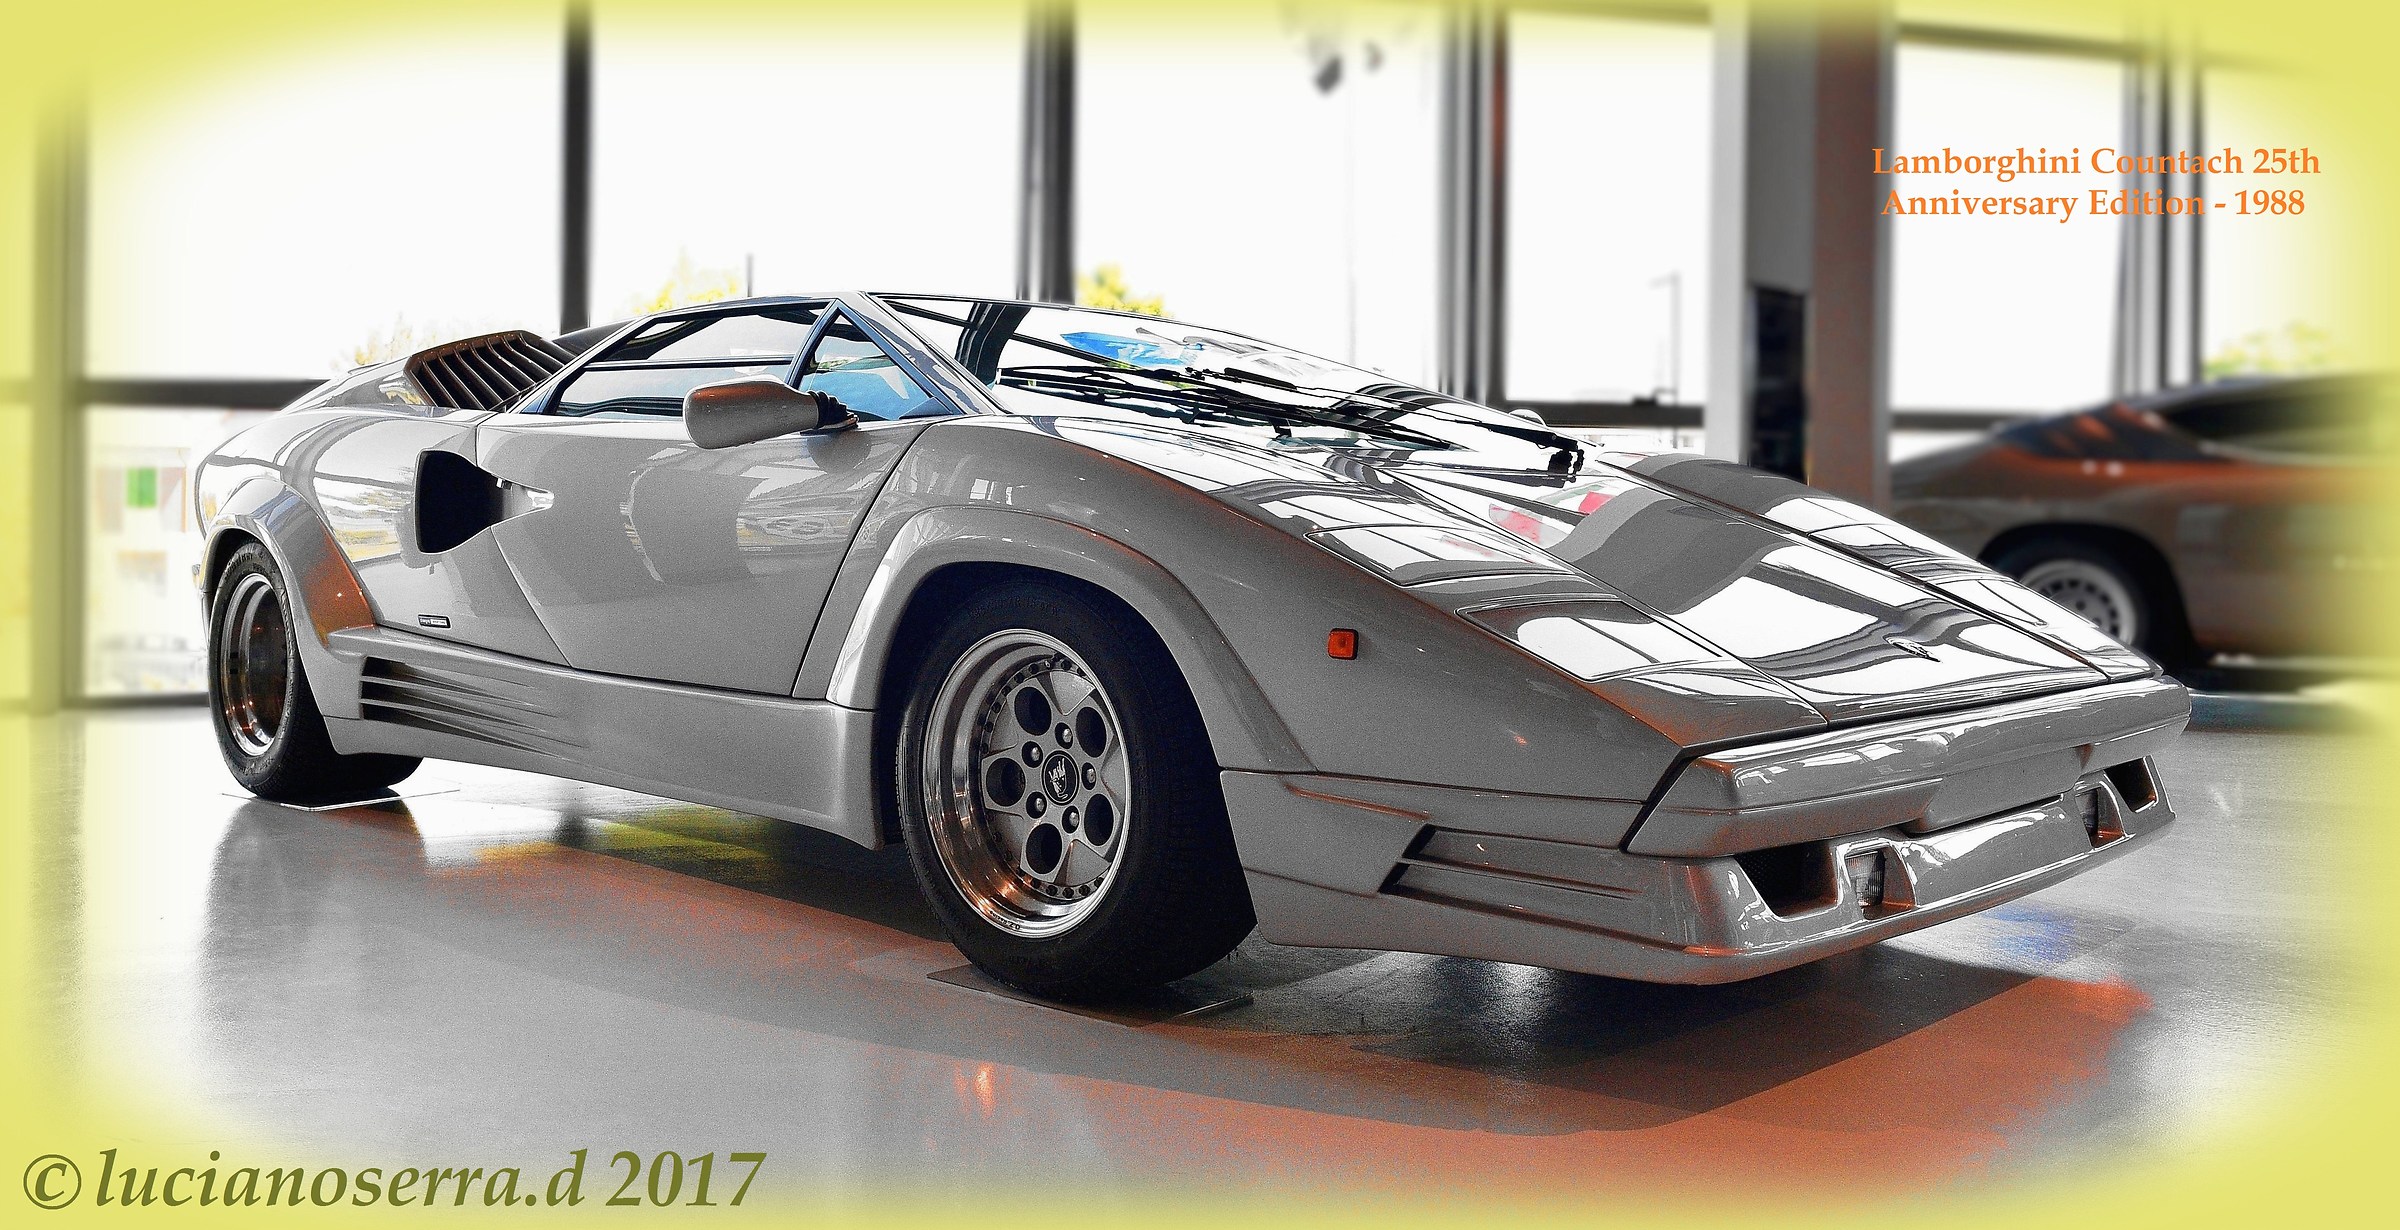 Lamborghini Countach edition of the 25th anniversary ...